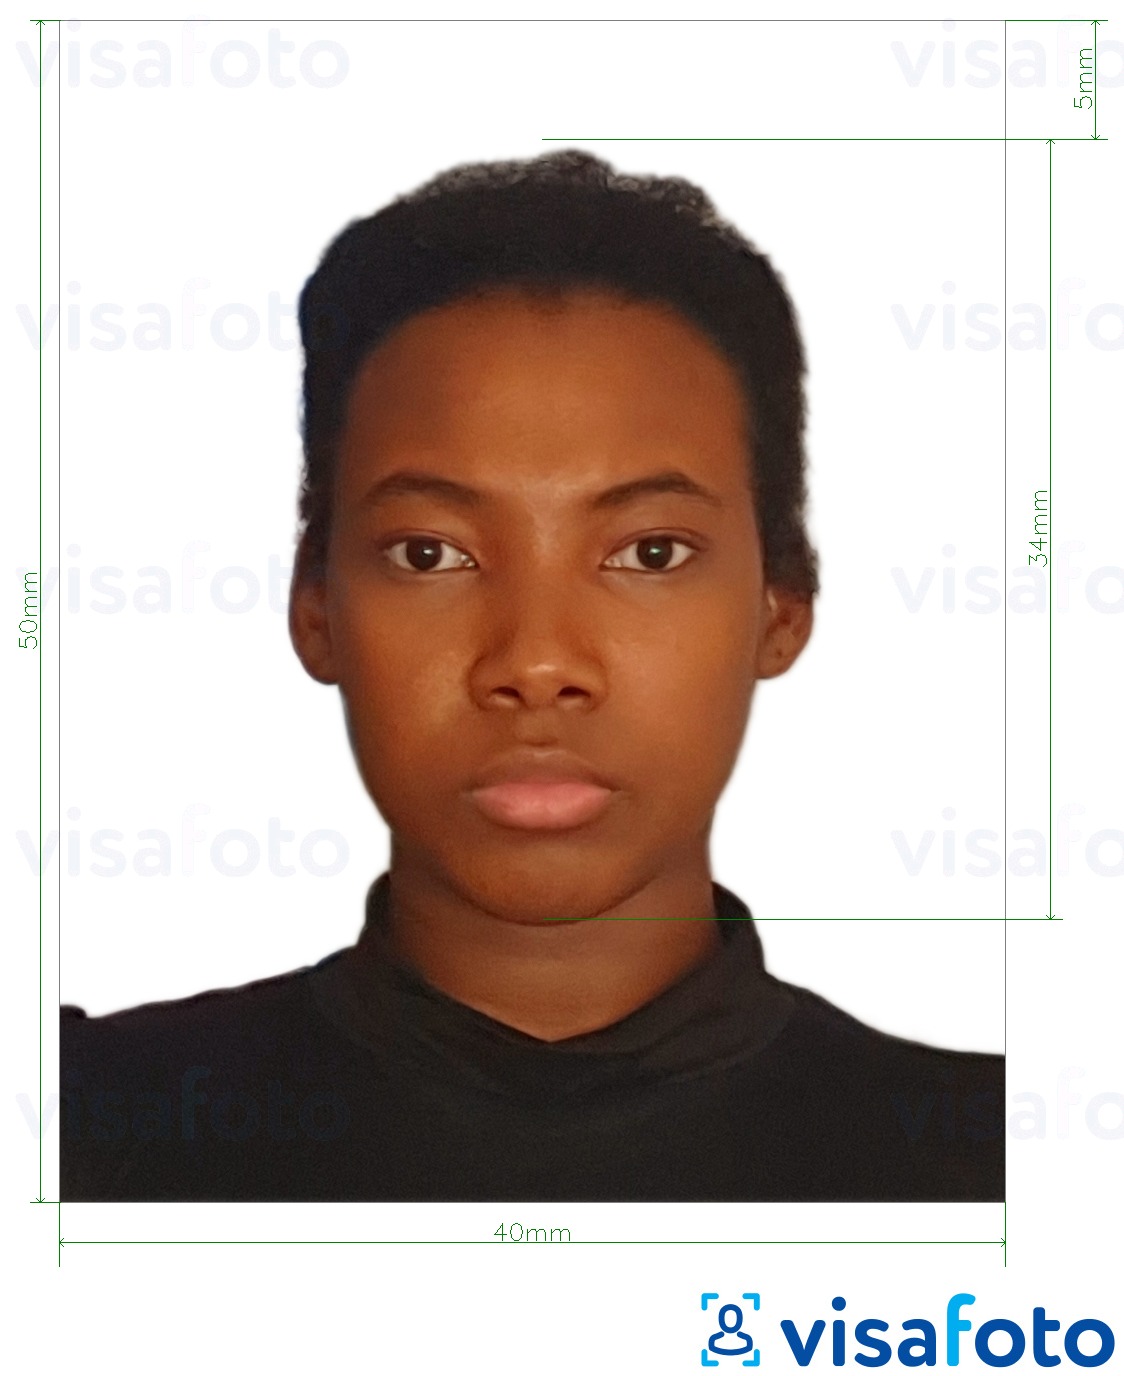 Príklad fotografie pre Kamerunský pas 4x5 cm (40x50 mm) s presnou špecifikáciou veľkosti